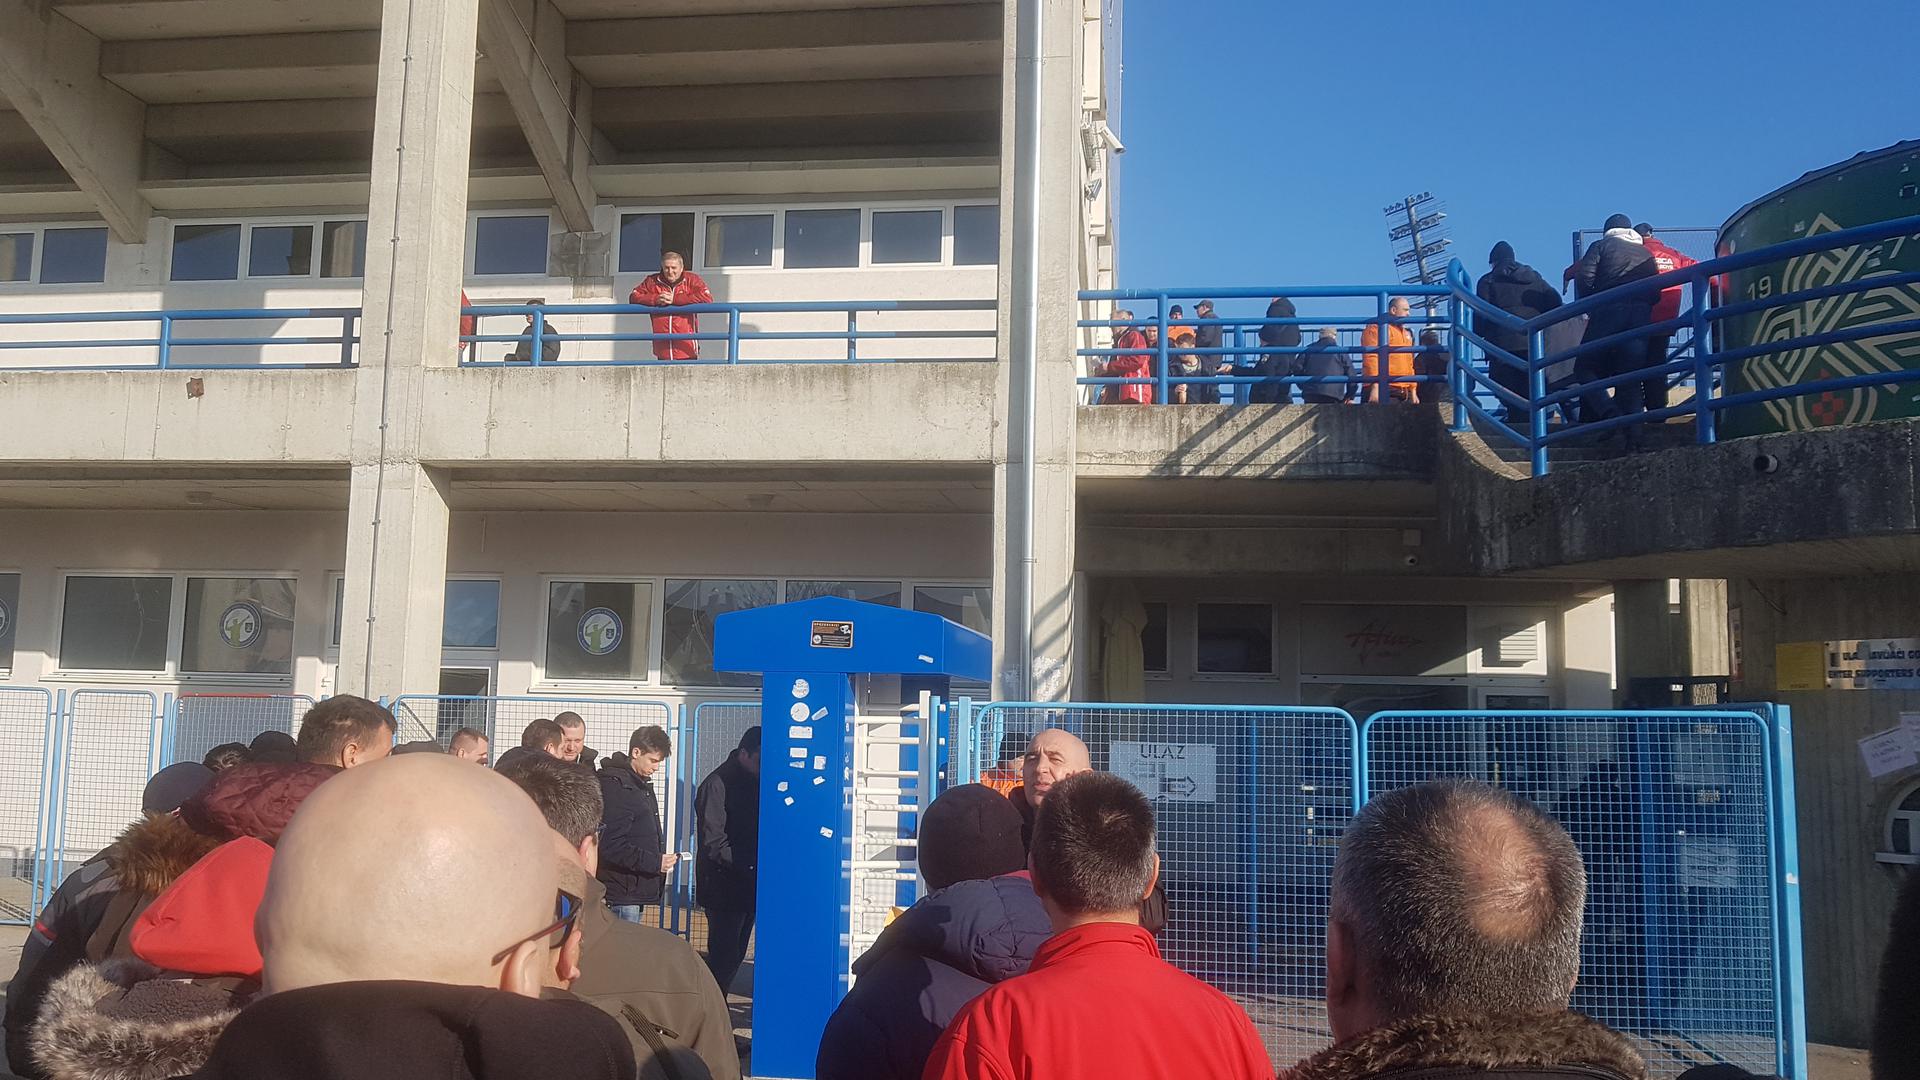 'Gorica, Gorica' odjekuje koprivničkim stadionom i nema sumnje kako će gostujuća momčad danas imati glasniju potporu na tribinama.